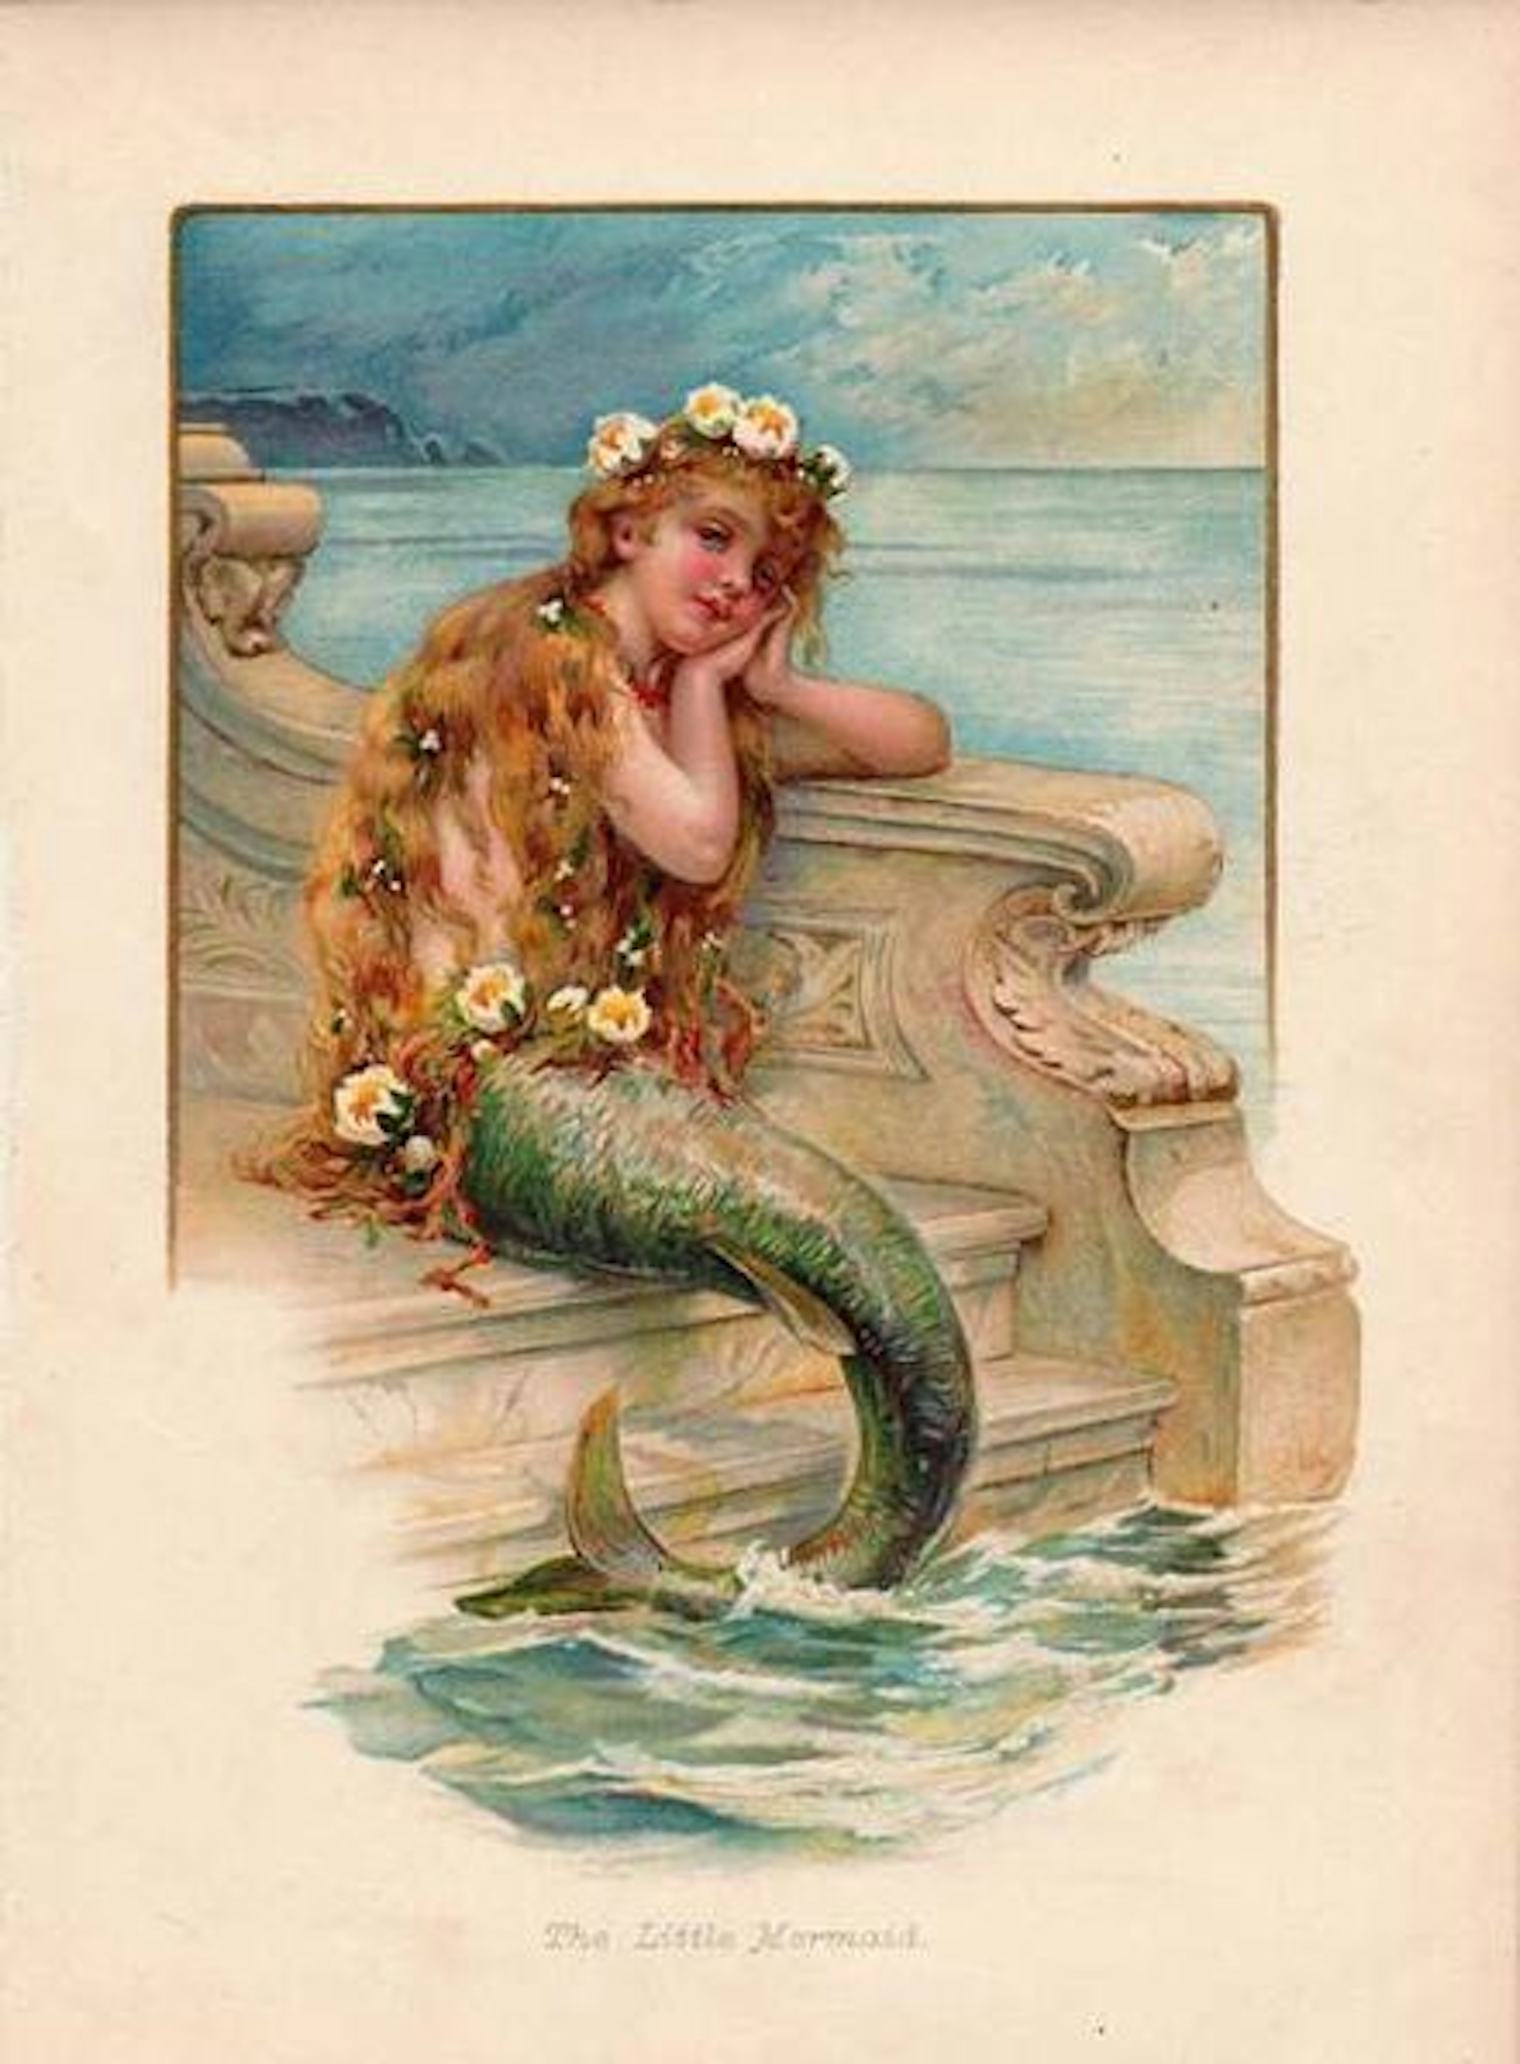 9 Ways The Original Little Mermaid By Hans Christian Andersen Is